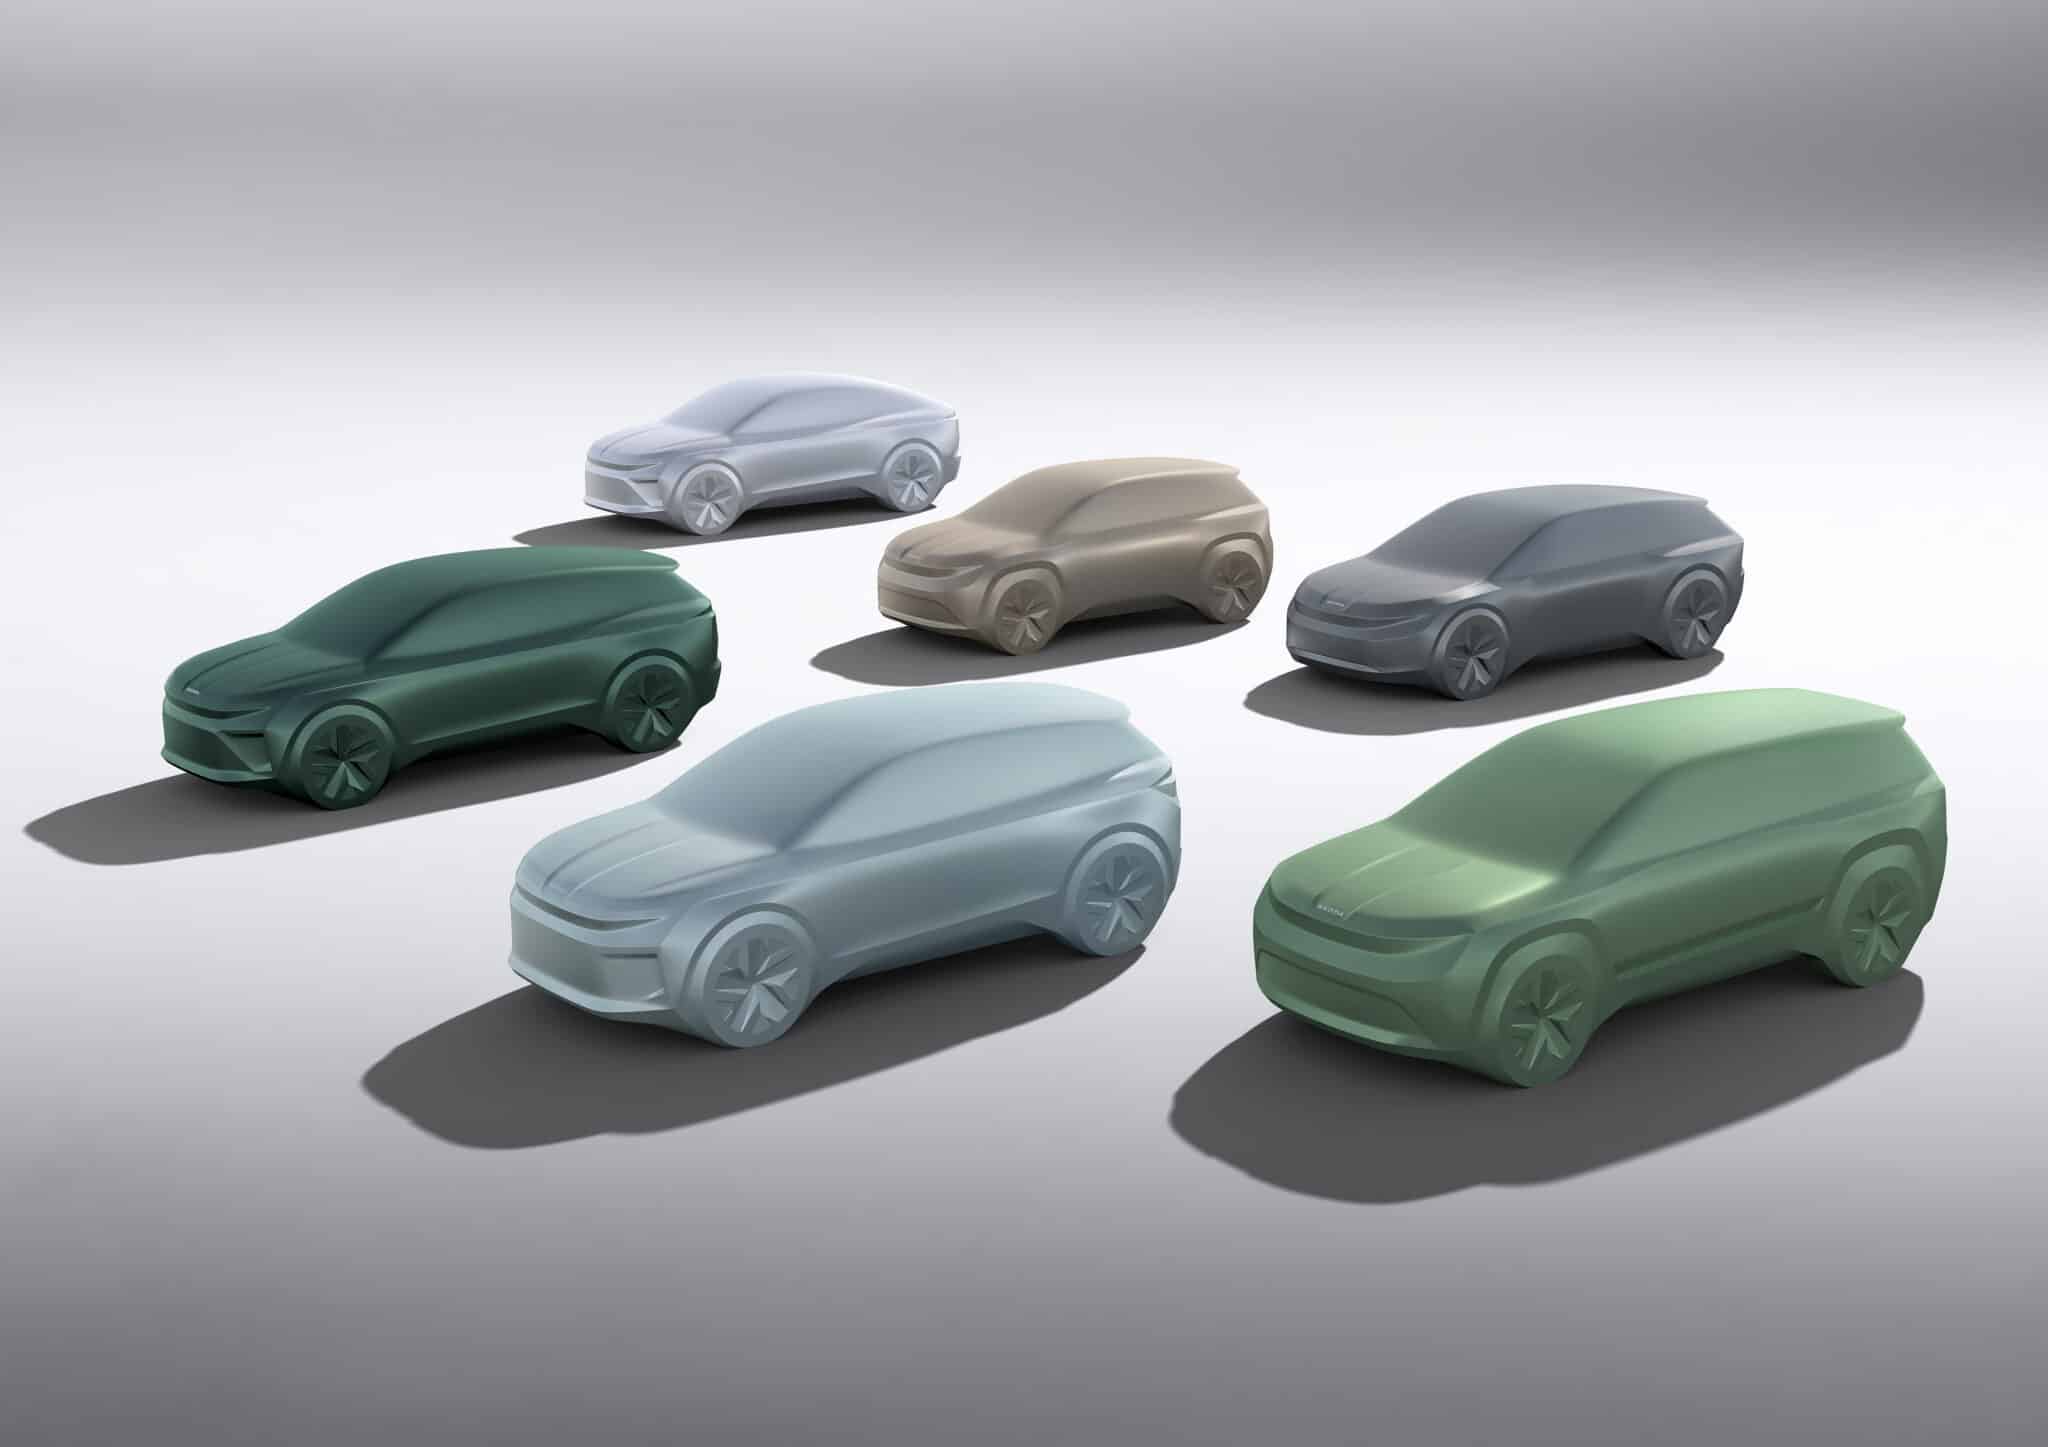 Elektromobilitätsoffensive von Škoda mit sechs neuen Elektrofahrzeugen bis 2026 | 02 1 Lets explore sculptures scaled